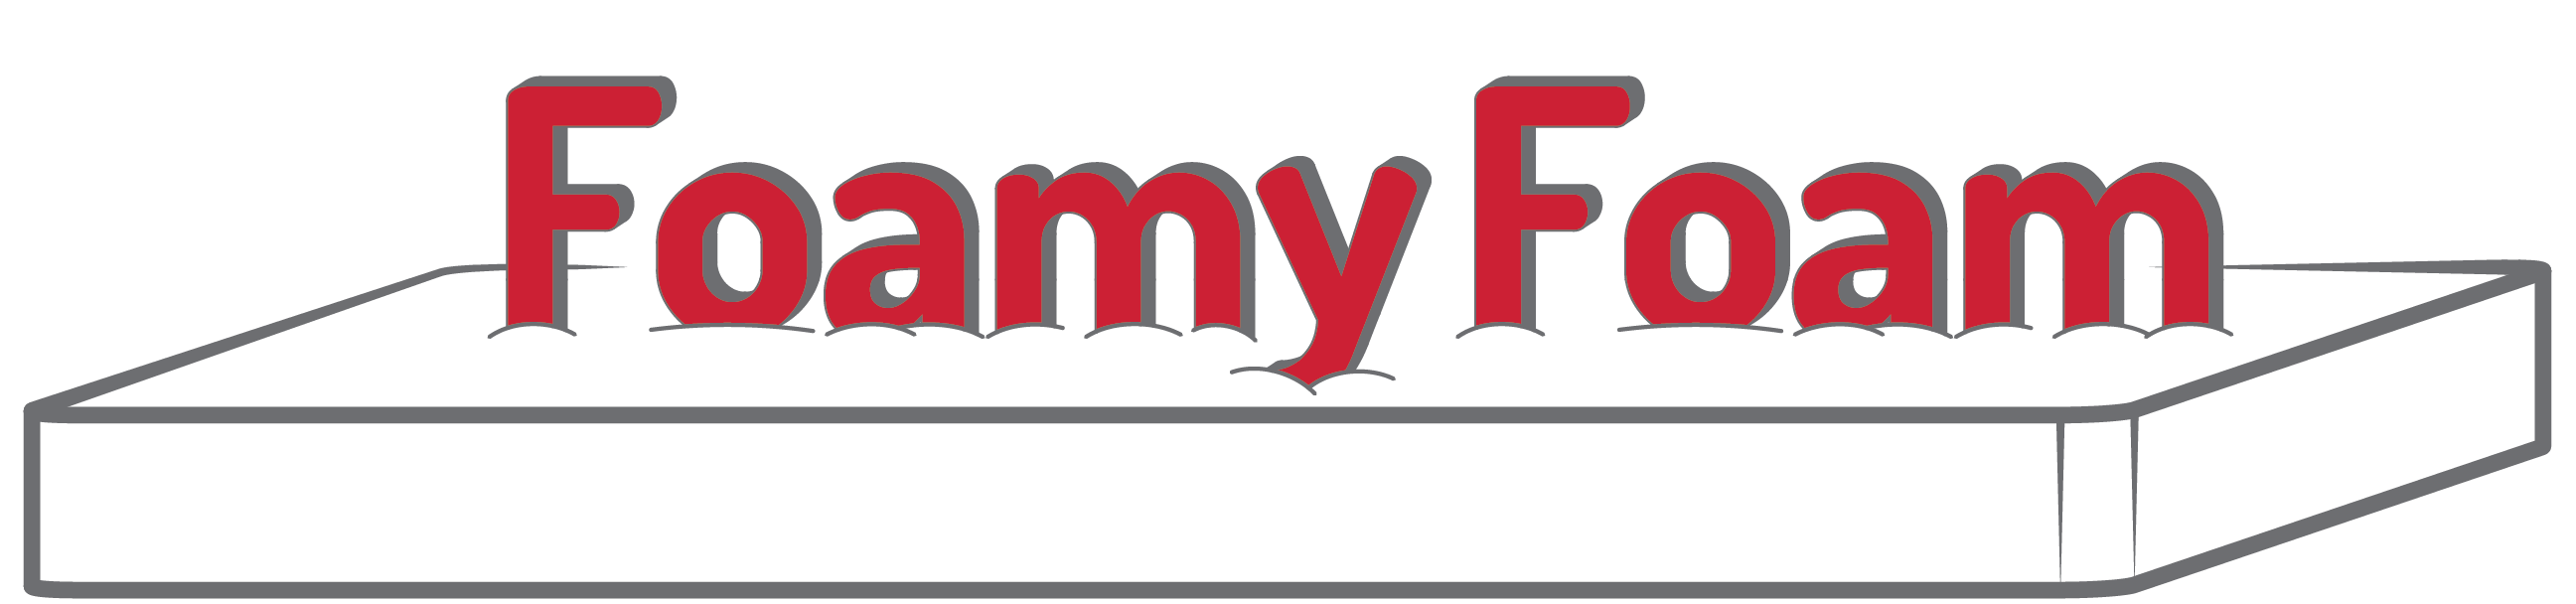 FoamyFoam